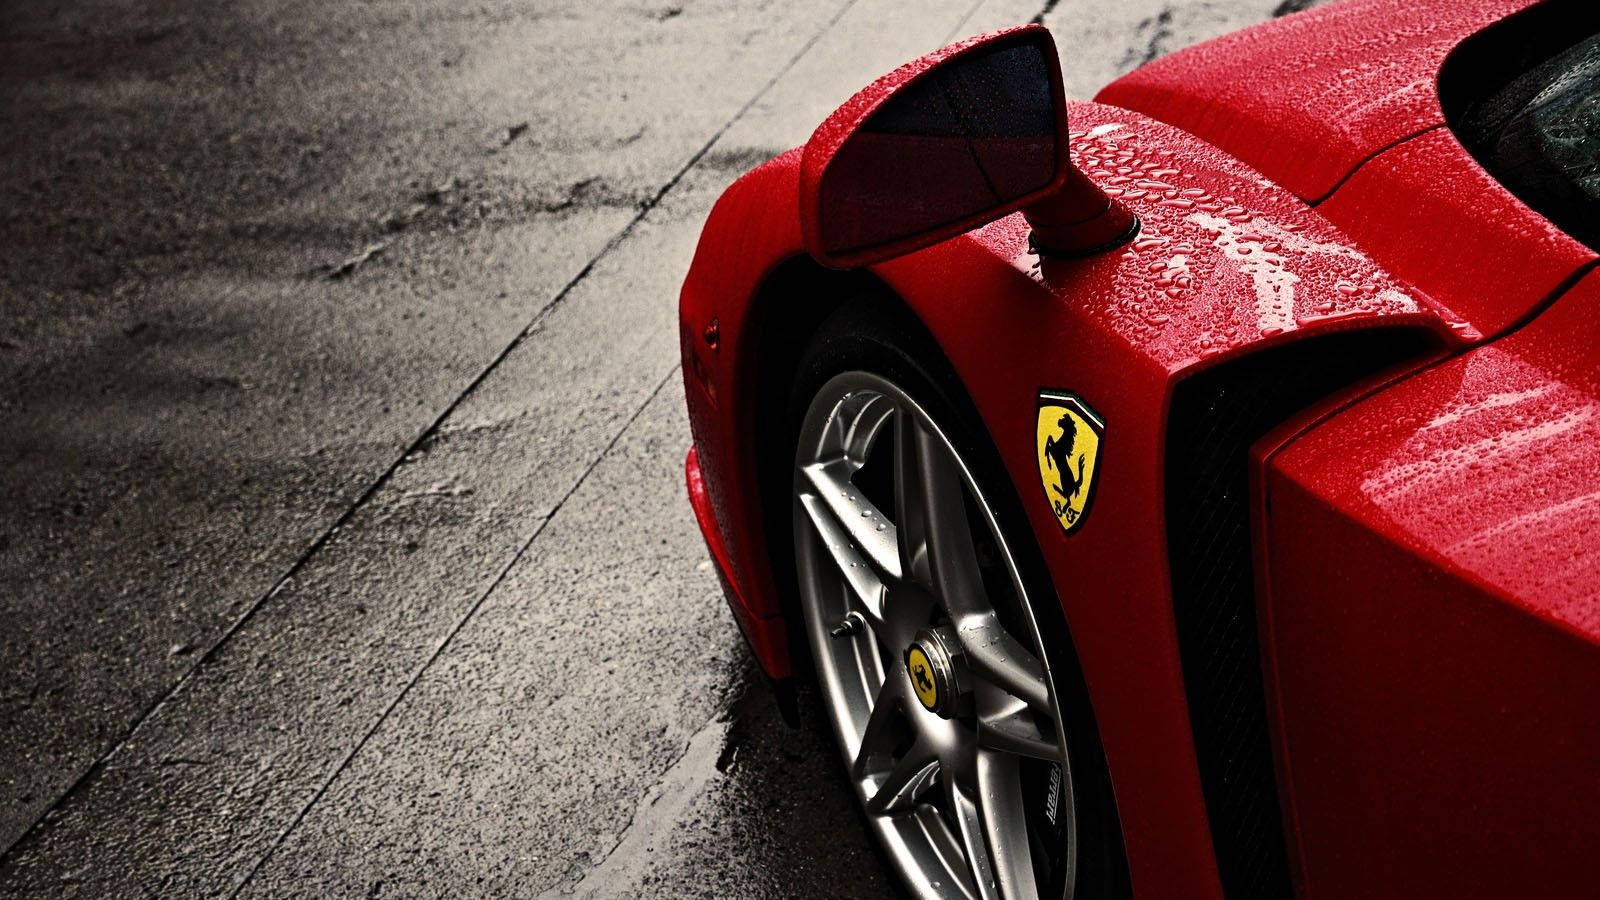 Ferrari Supercar In Rain Background